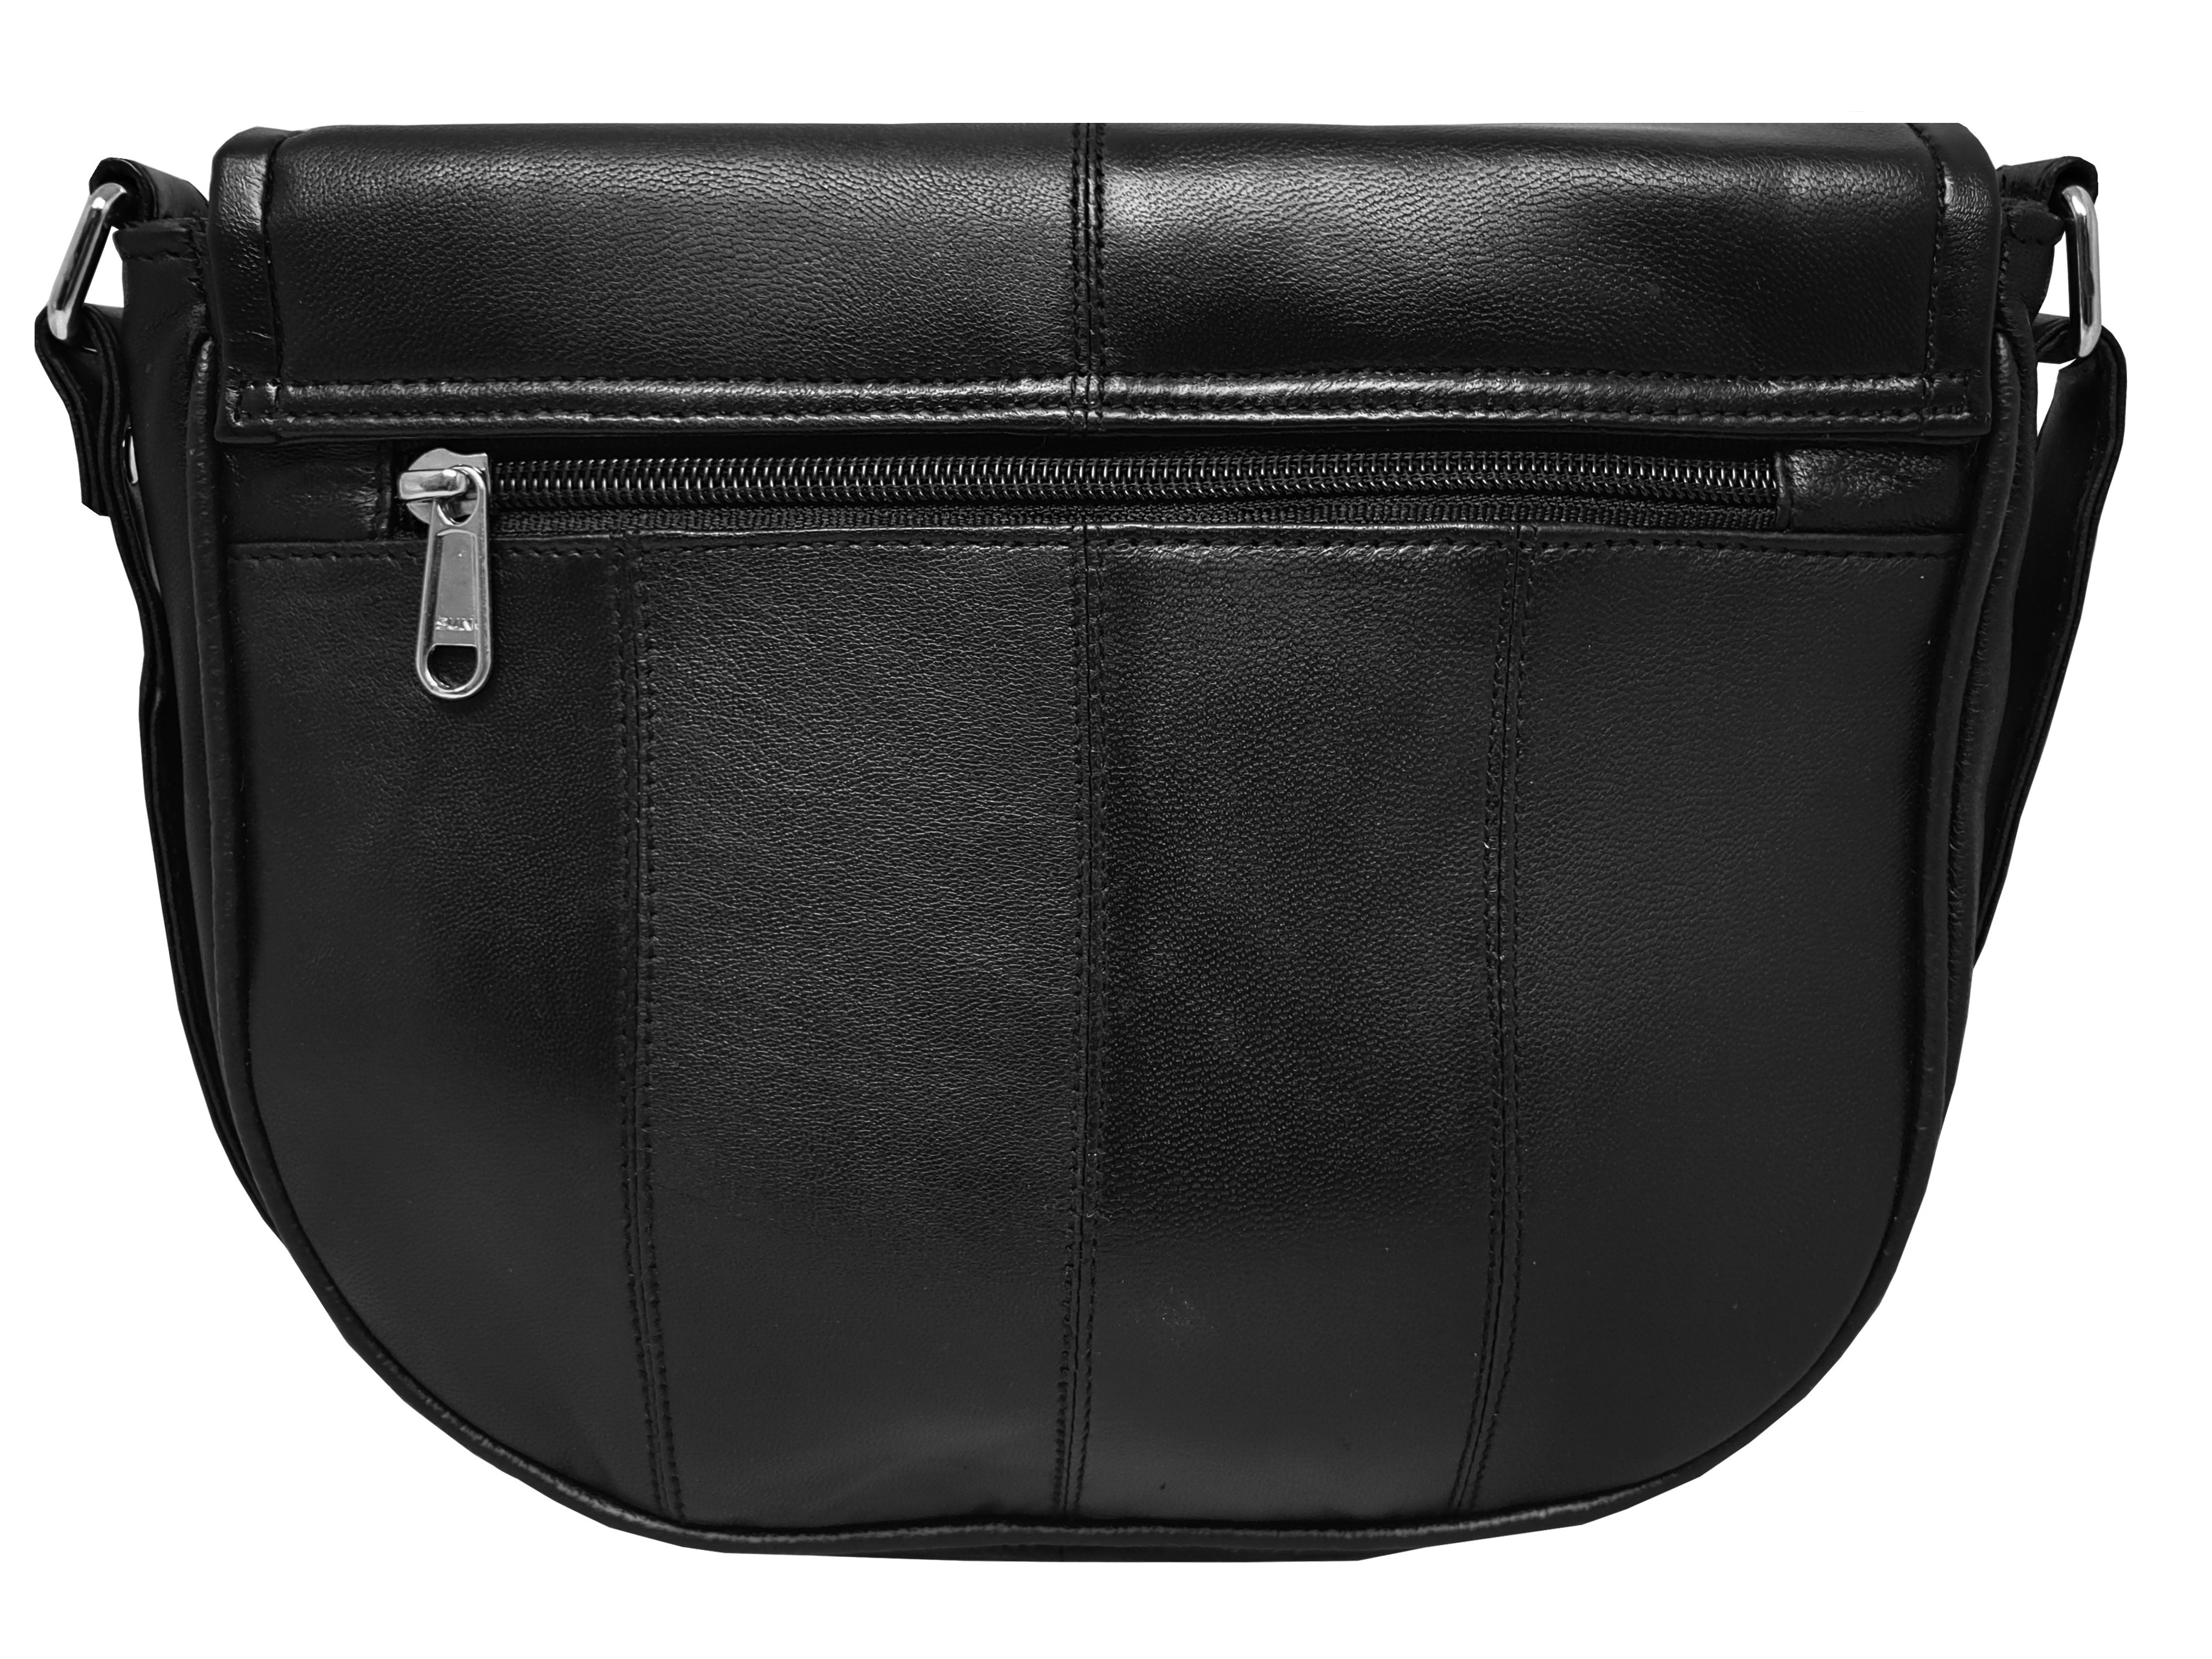 Leather-Handbag-QL185Kb.jpg